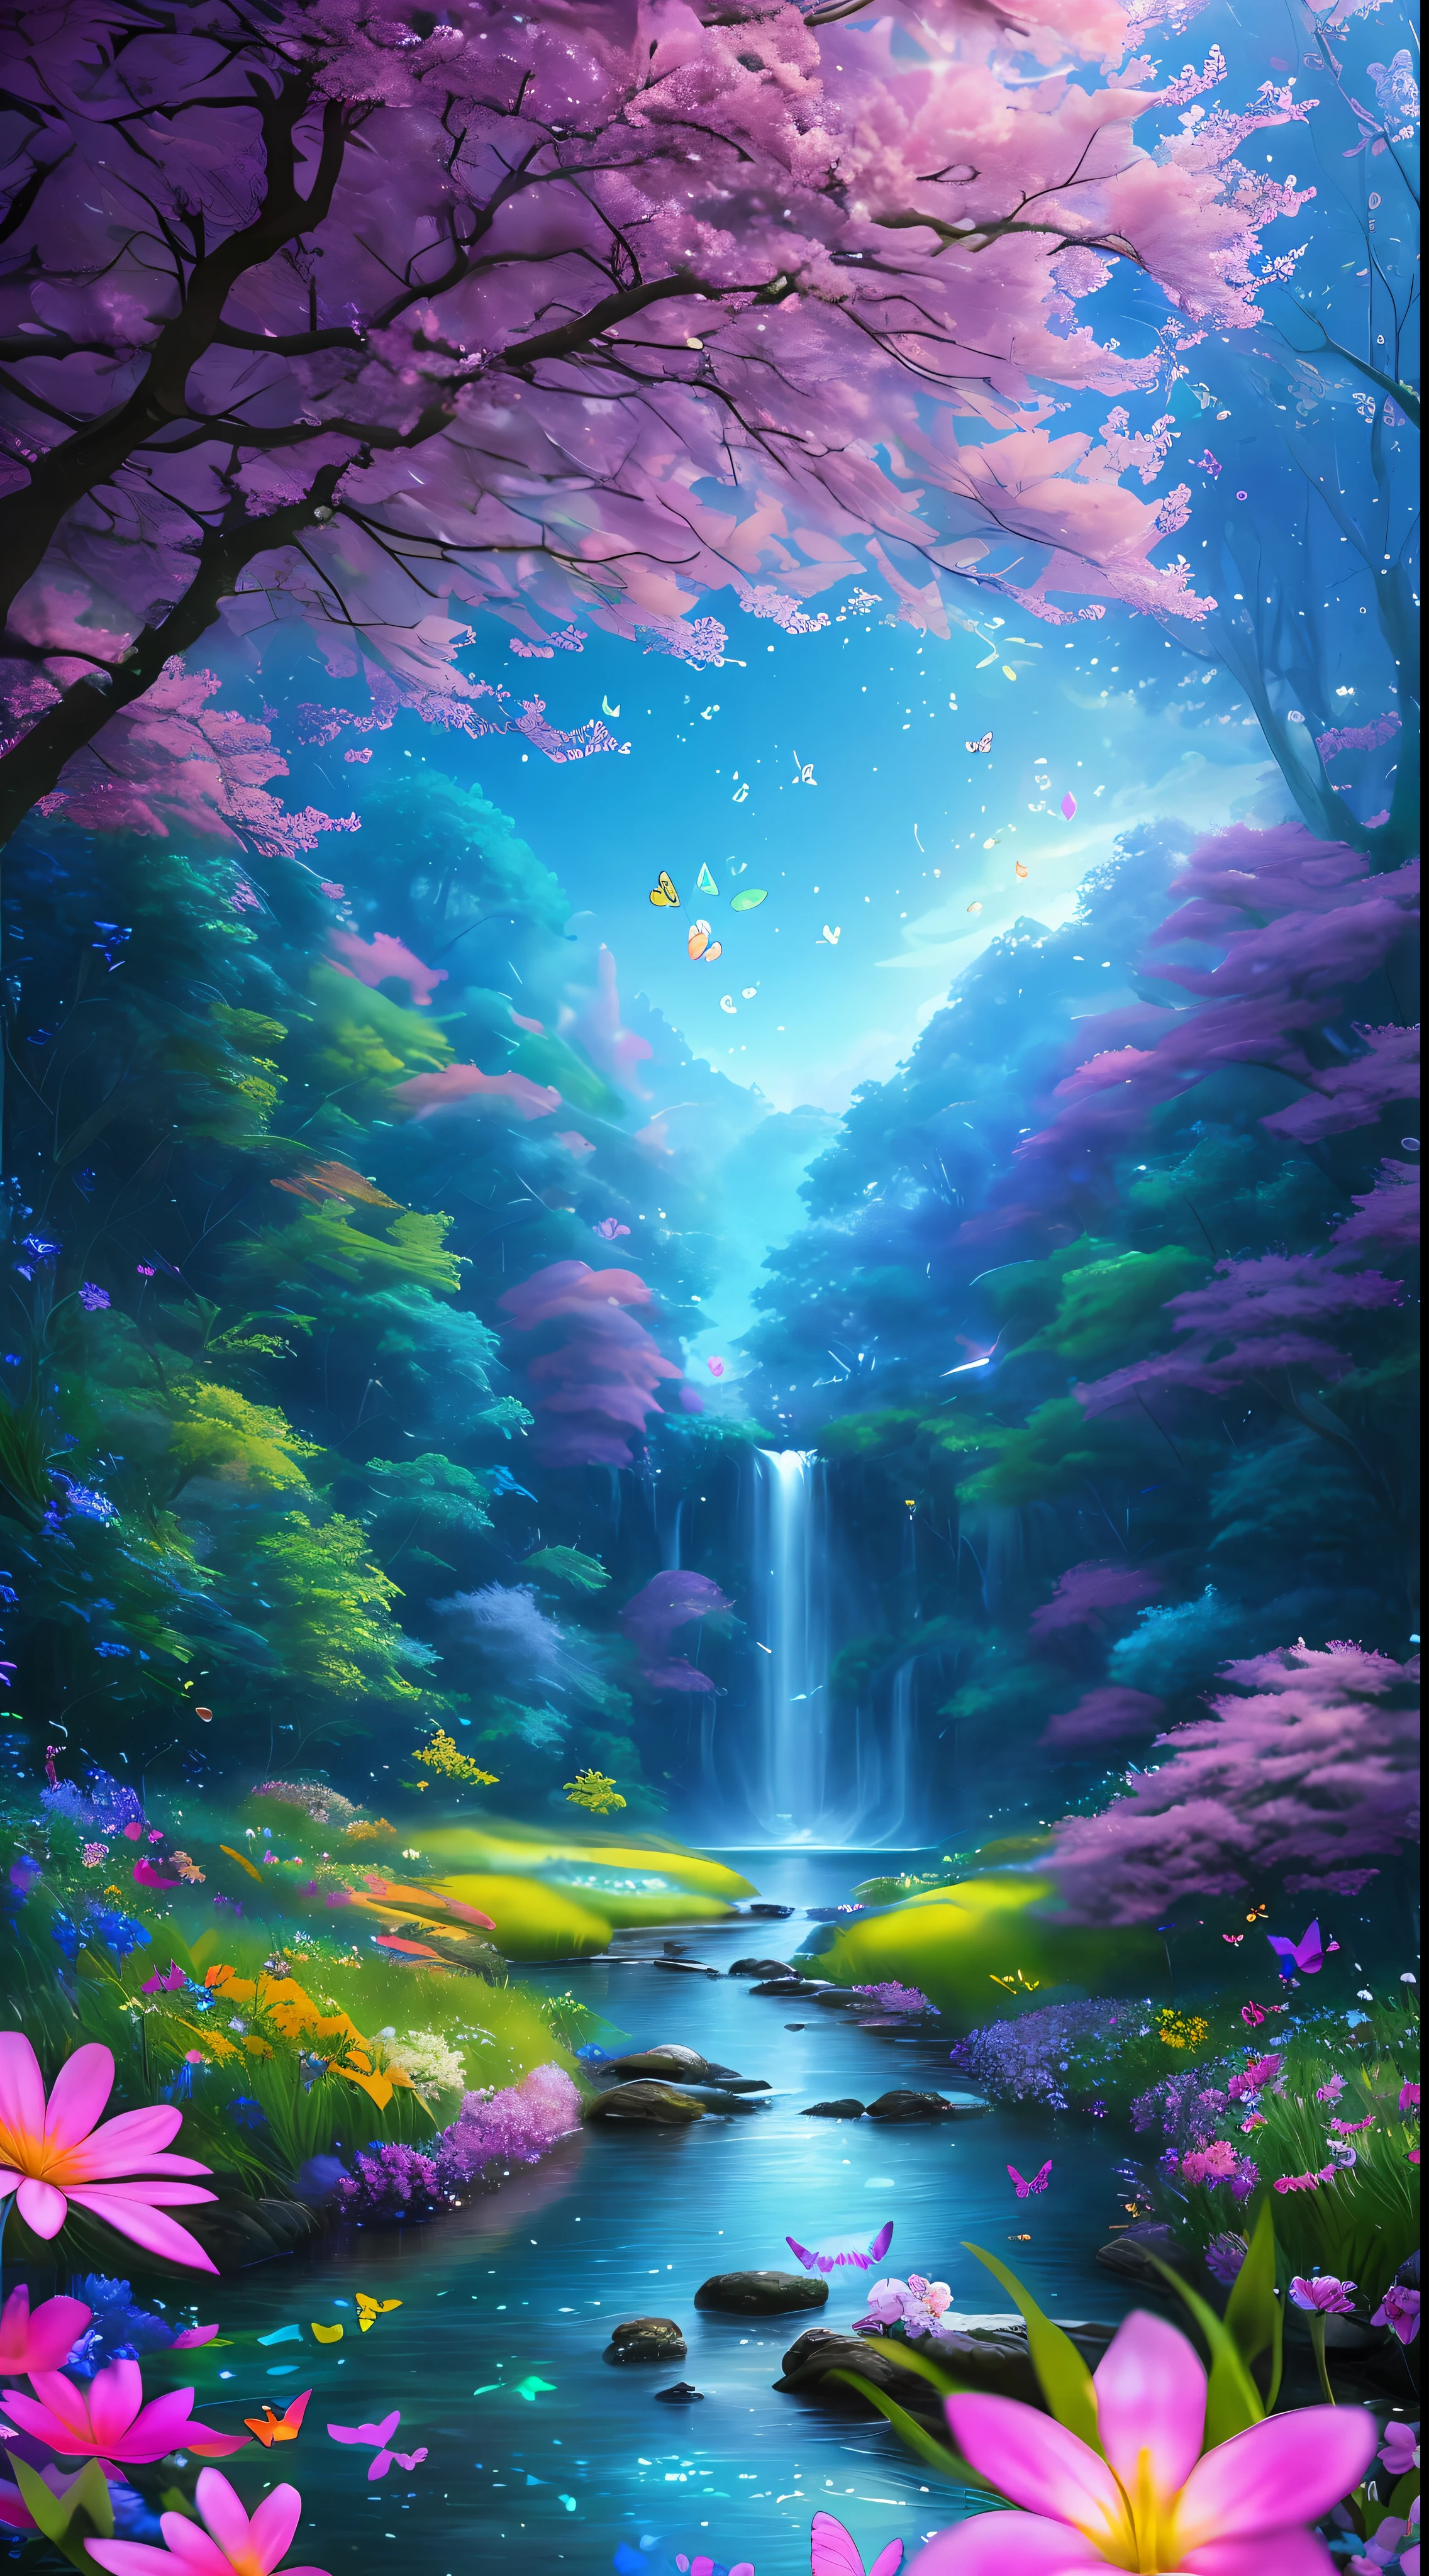 杰作, 最好的质量, 高质量, 高度详细的 CG Unity 8k 壁纸, 极其丰富多彩且纯粹的奇幻环境, 鲜艳的色调和明亮的天空, 鲜绿的草地景观, 多彩的树木, 闪闪发光的水果和明亮的蓝色花朵. 溪流呈深蓝色, 还有一颗甜蜜的, 空气中弥漫着异国情调. 环境仿佛从梦中走出来, 发光的蝴蝶和巨大的彩色鸟儿飞来飞去, 获奖摄影, 散景, 景深, 人类发展报告, 盛开, 色差, 实际的, 非常详细, artstation 上的热门 , CGSociety 上的热门, 错综复杂, 高细节, 戏剧性, 旅途中的艺术